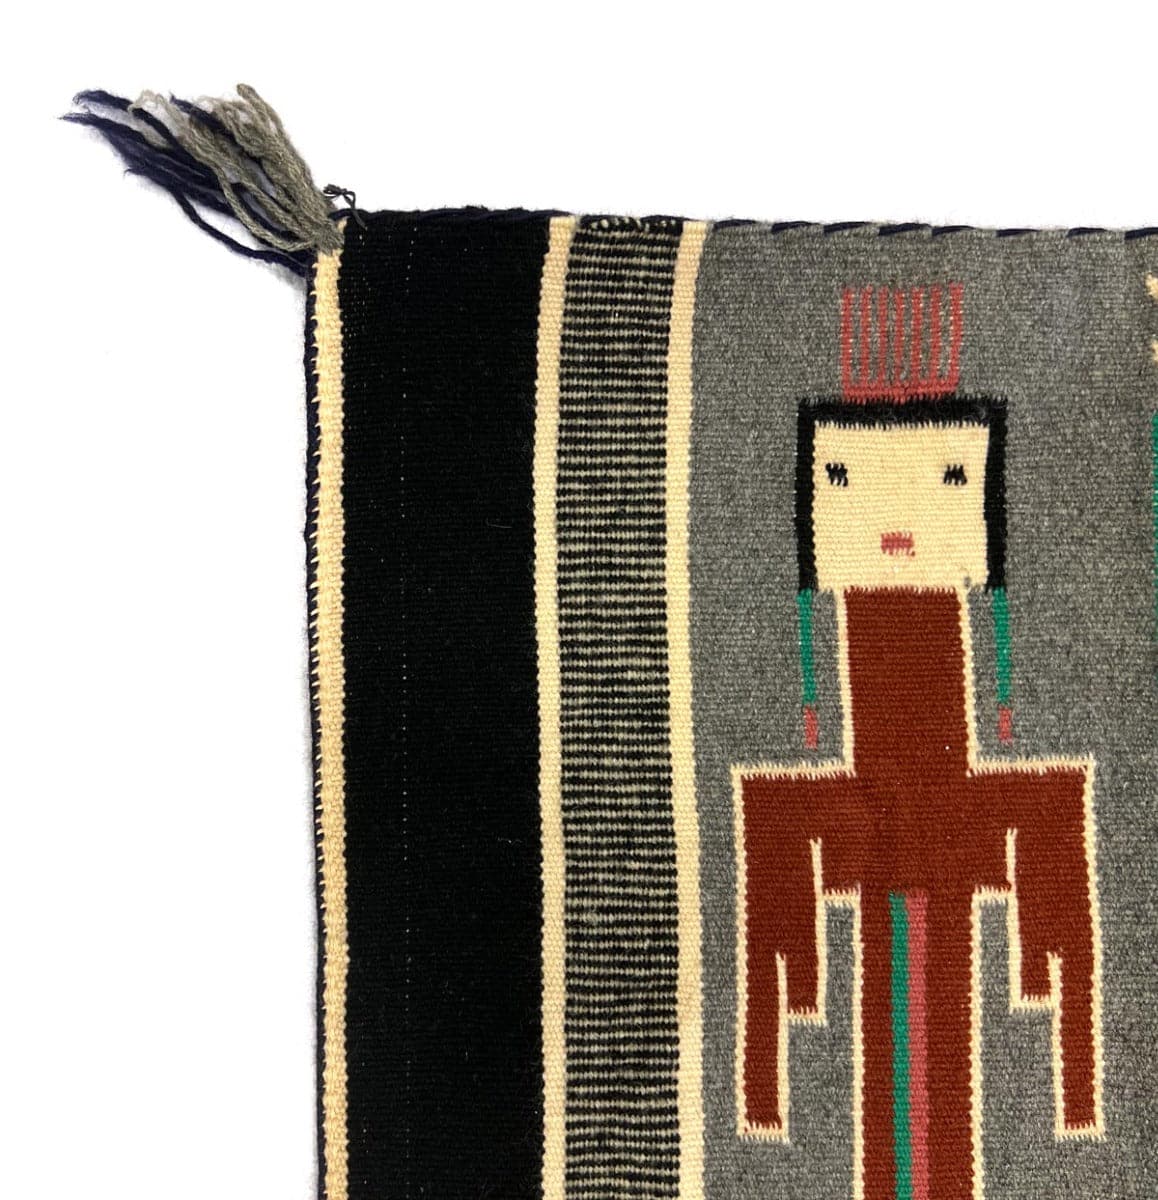 Navajo Pictorial Rug with Yei Figures and Cornstalks c. 1960-70s, 27" x 49.5" (T91660-1221-001) 1